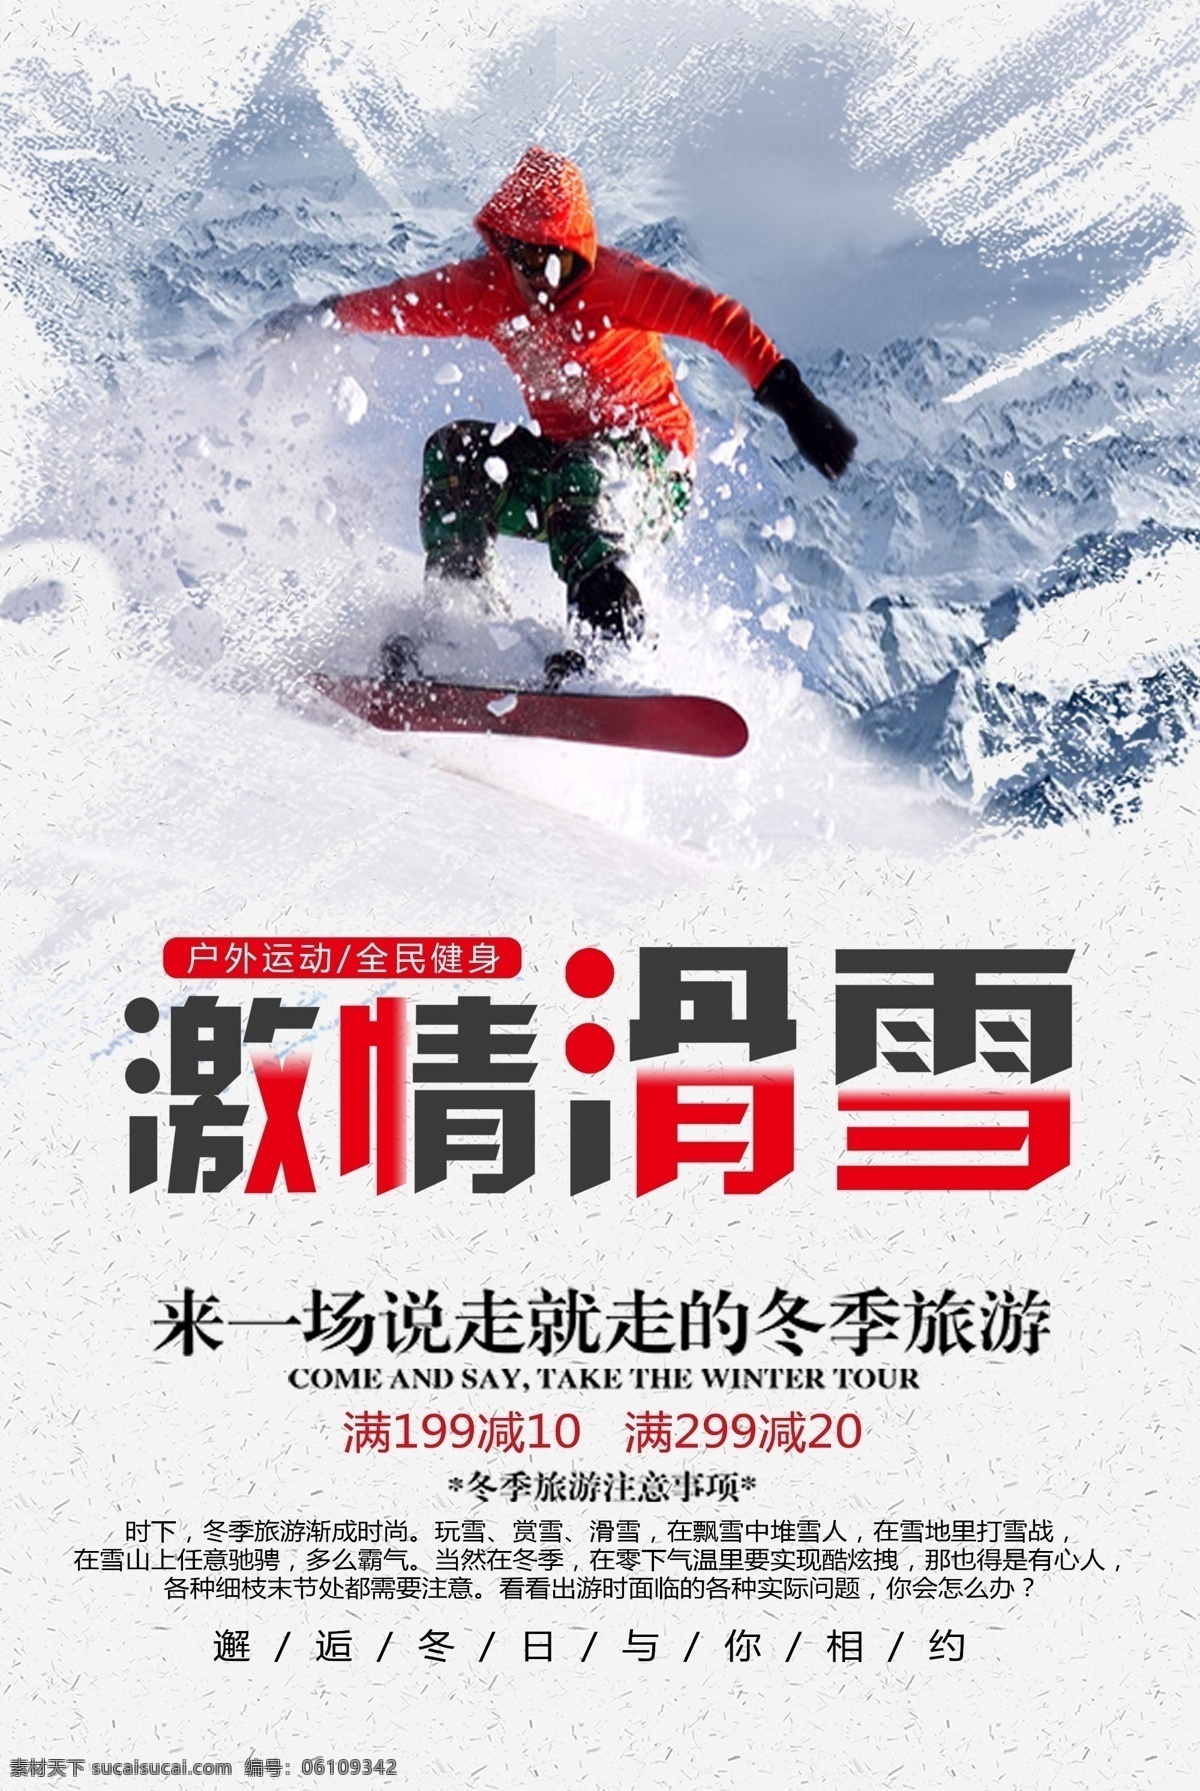 2018 创意 滑雪 海报 宣传单 展板 体育 滑雪海报 简约 平面设计 体育海报 ps